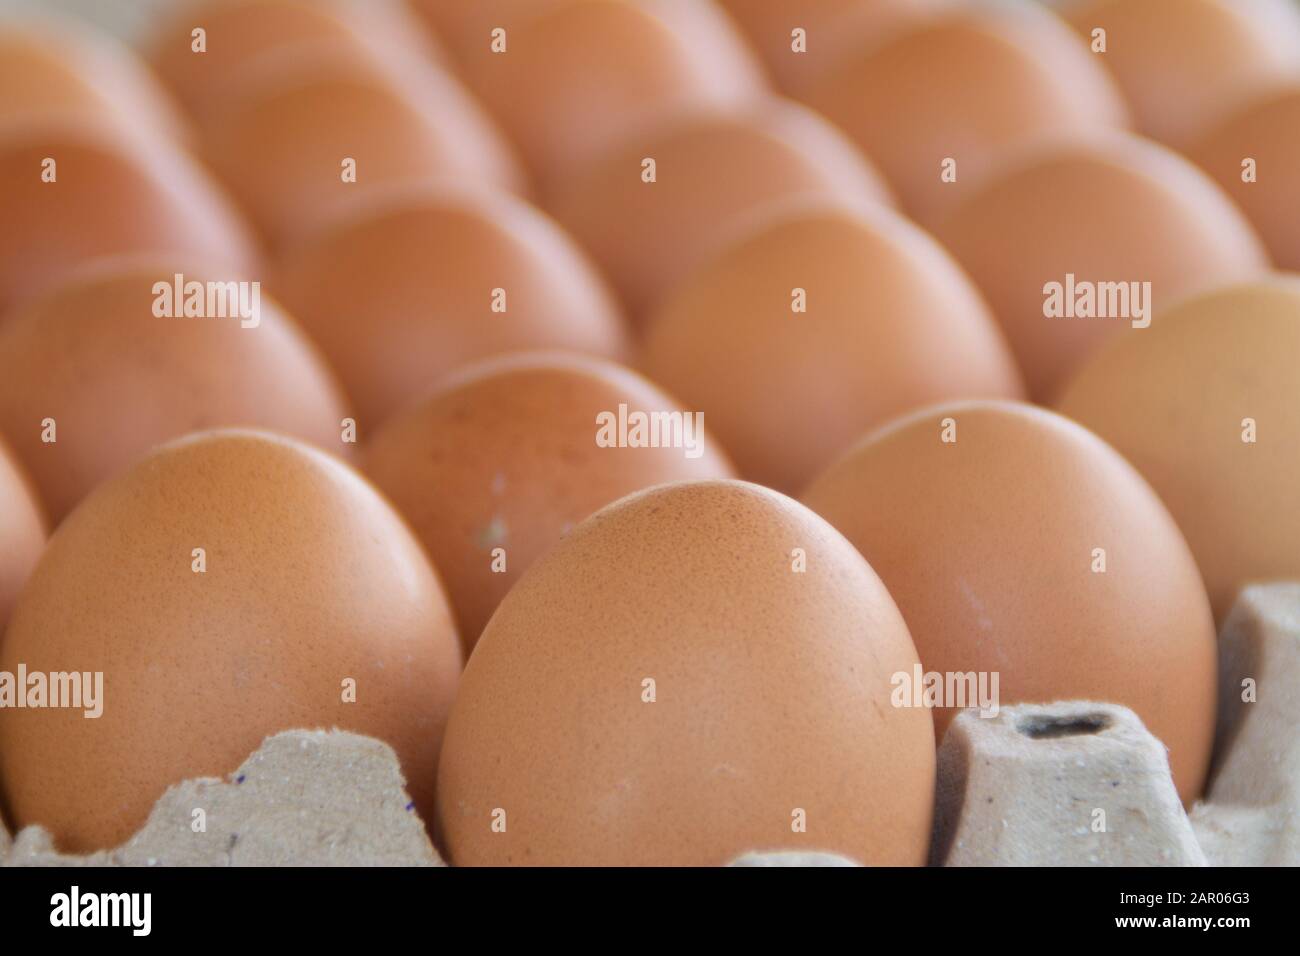 Braune Hühnereier sind in der Schale zum Verkauf auf dem Markt. Eier sind gutes Protein. Die Eier werden in einem Tablett der gleichen Größe angeordnet. Stockfoto